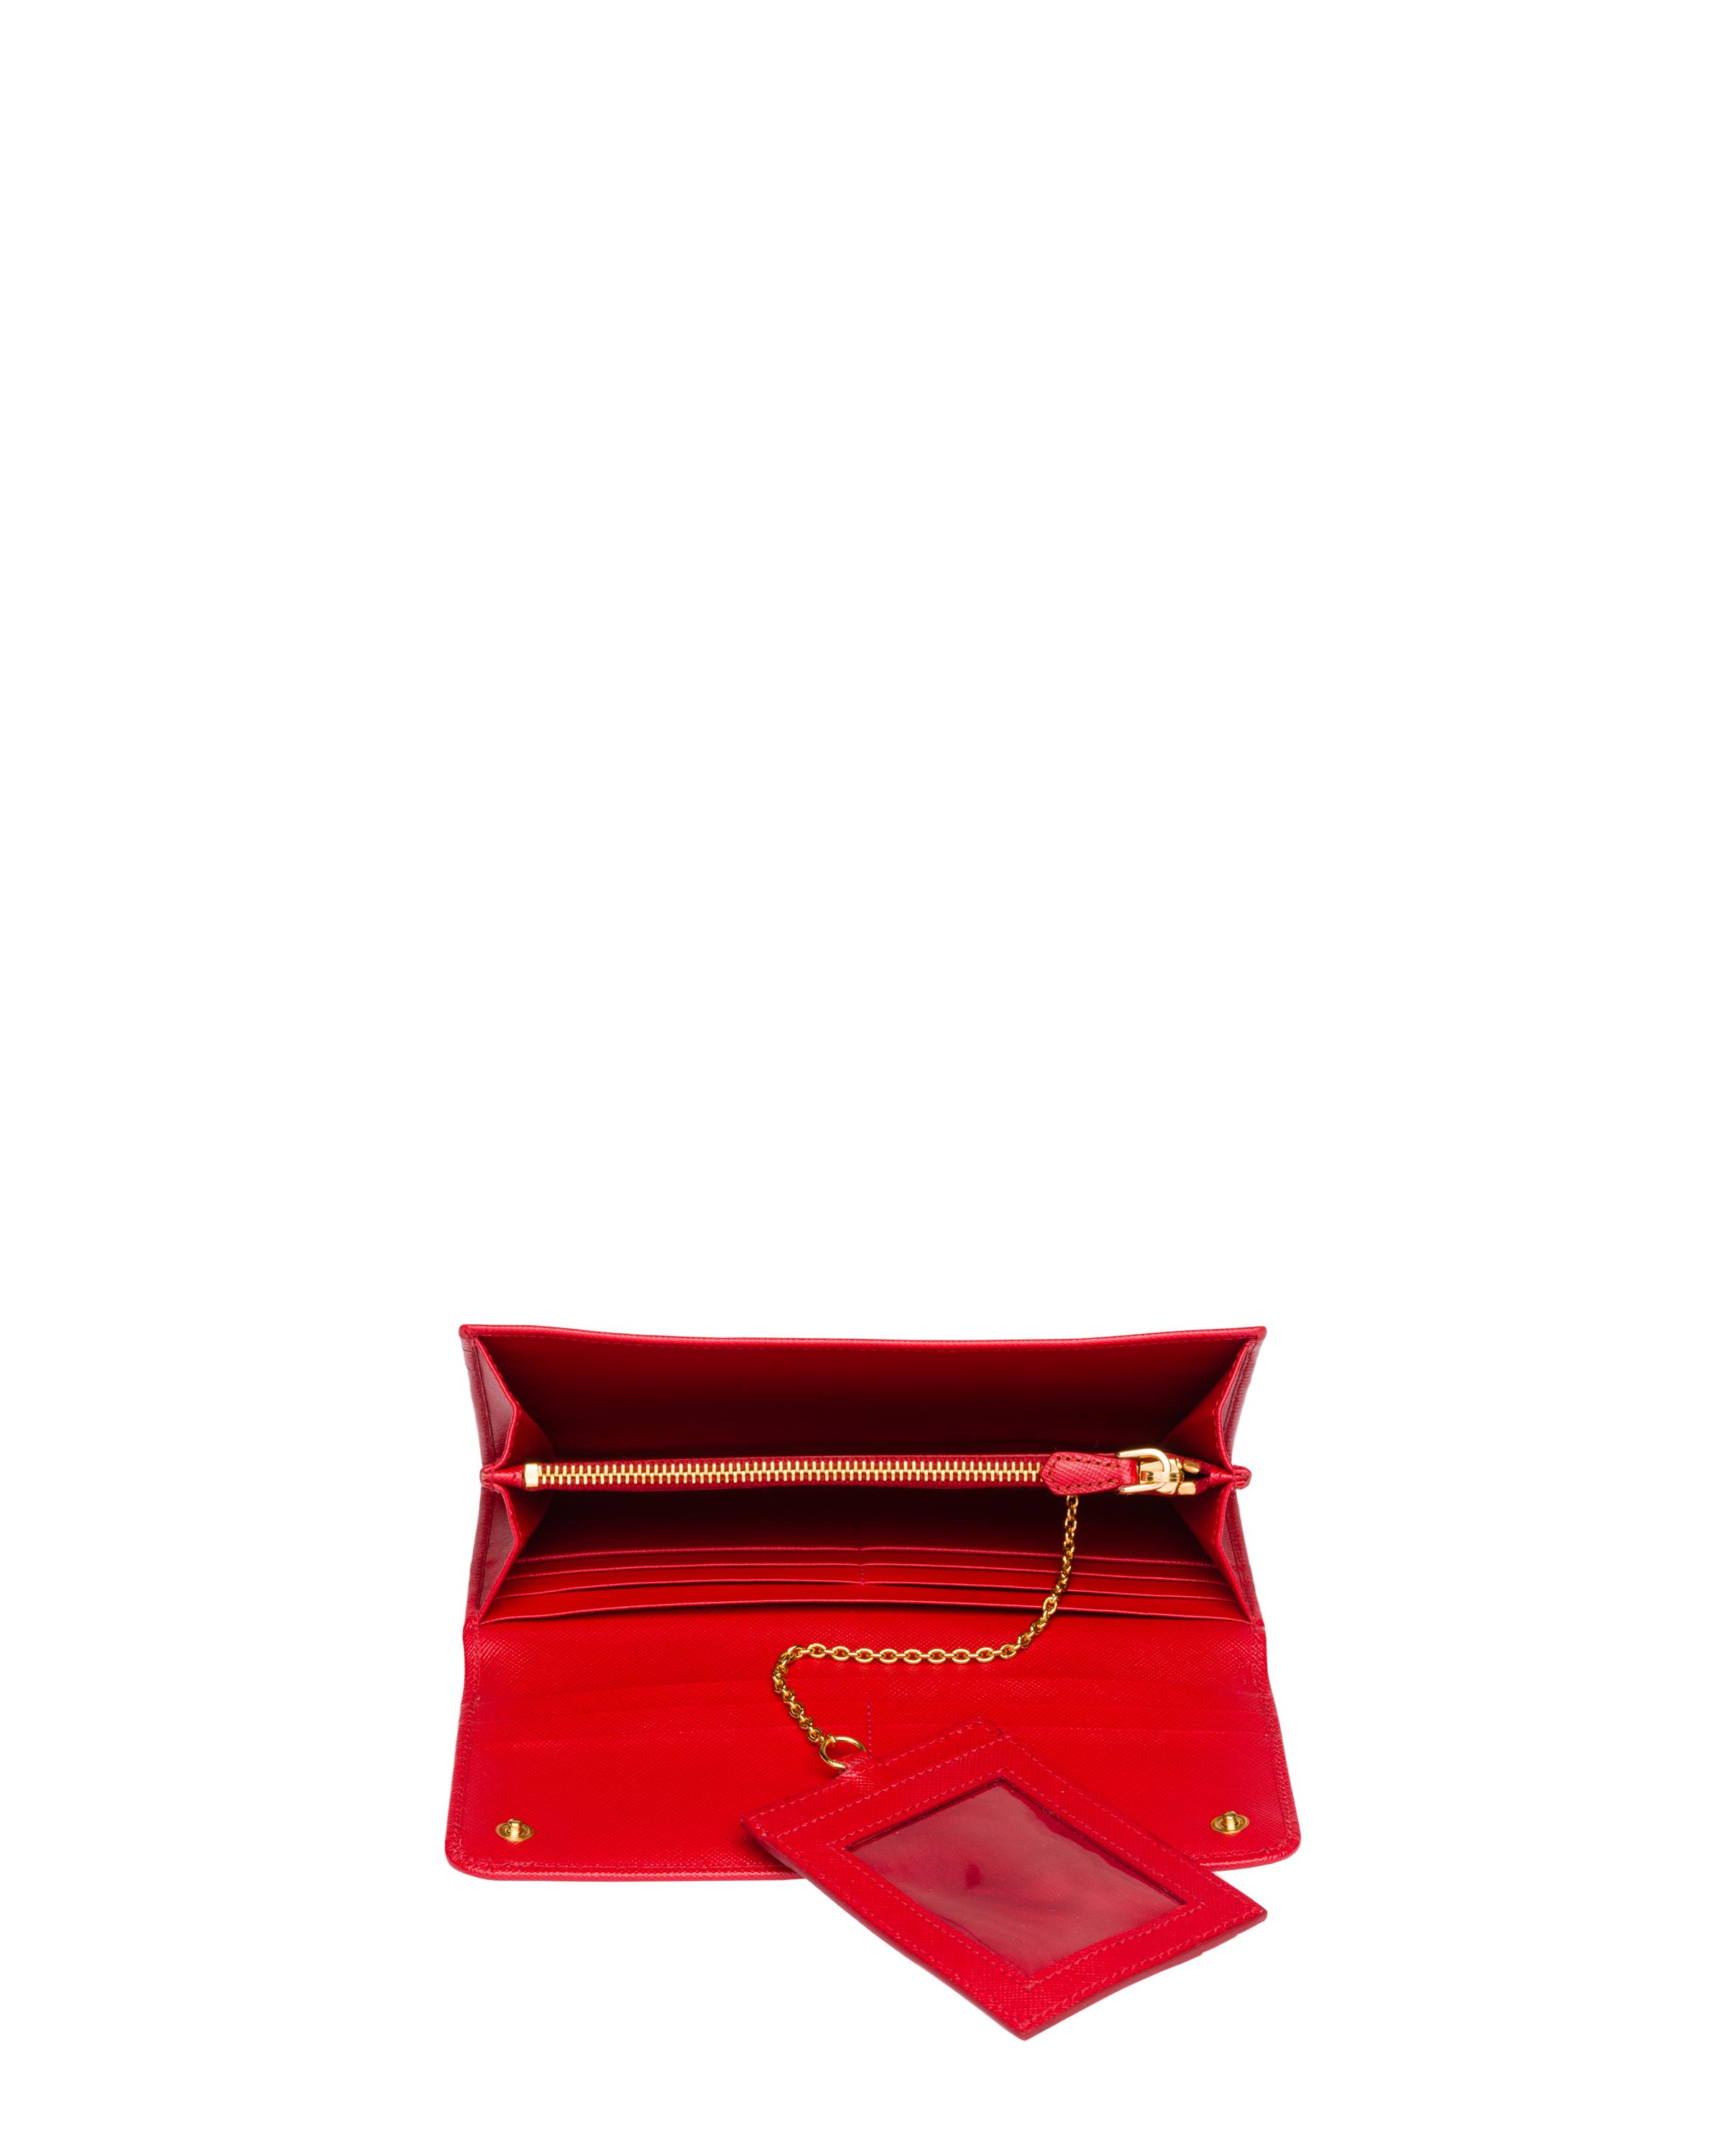 Portefeuille En Cuir Saffiano Cuir Prada en coloris Rouge Femme Accessoires Portefeuilles et porte-cartes 